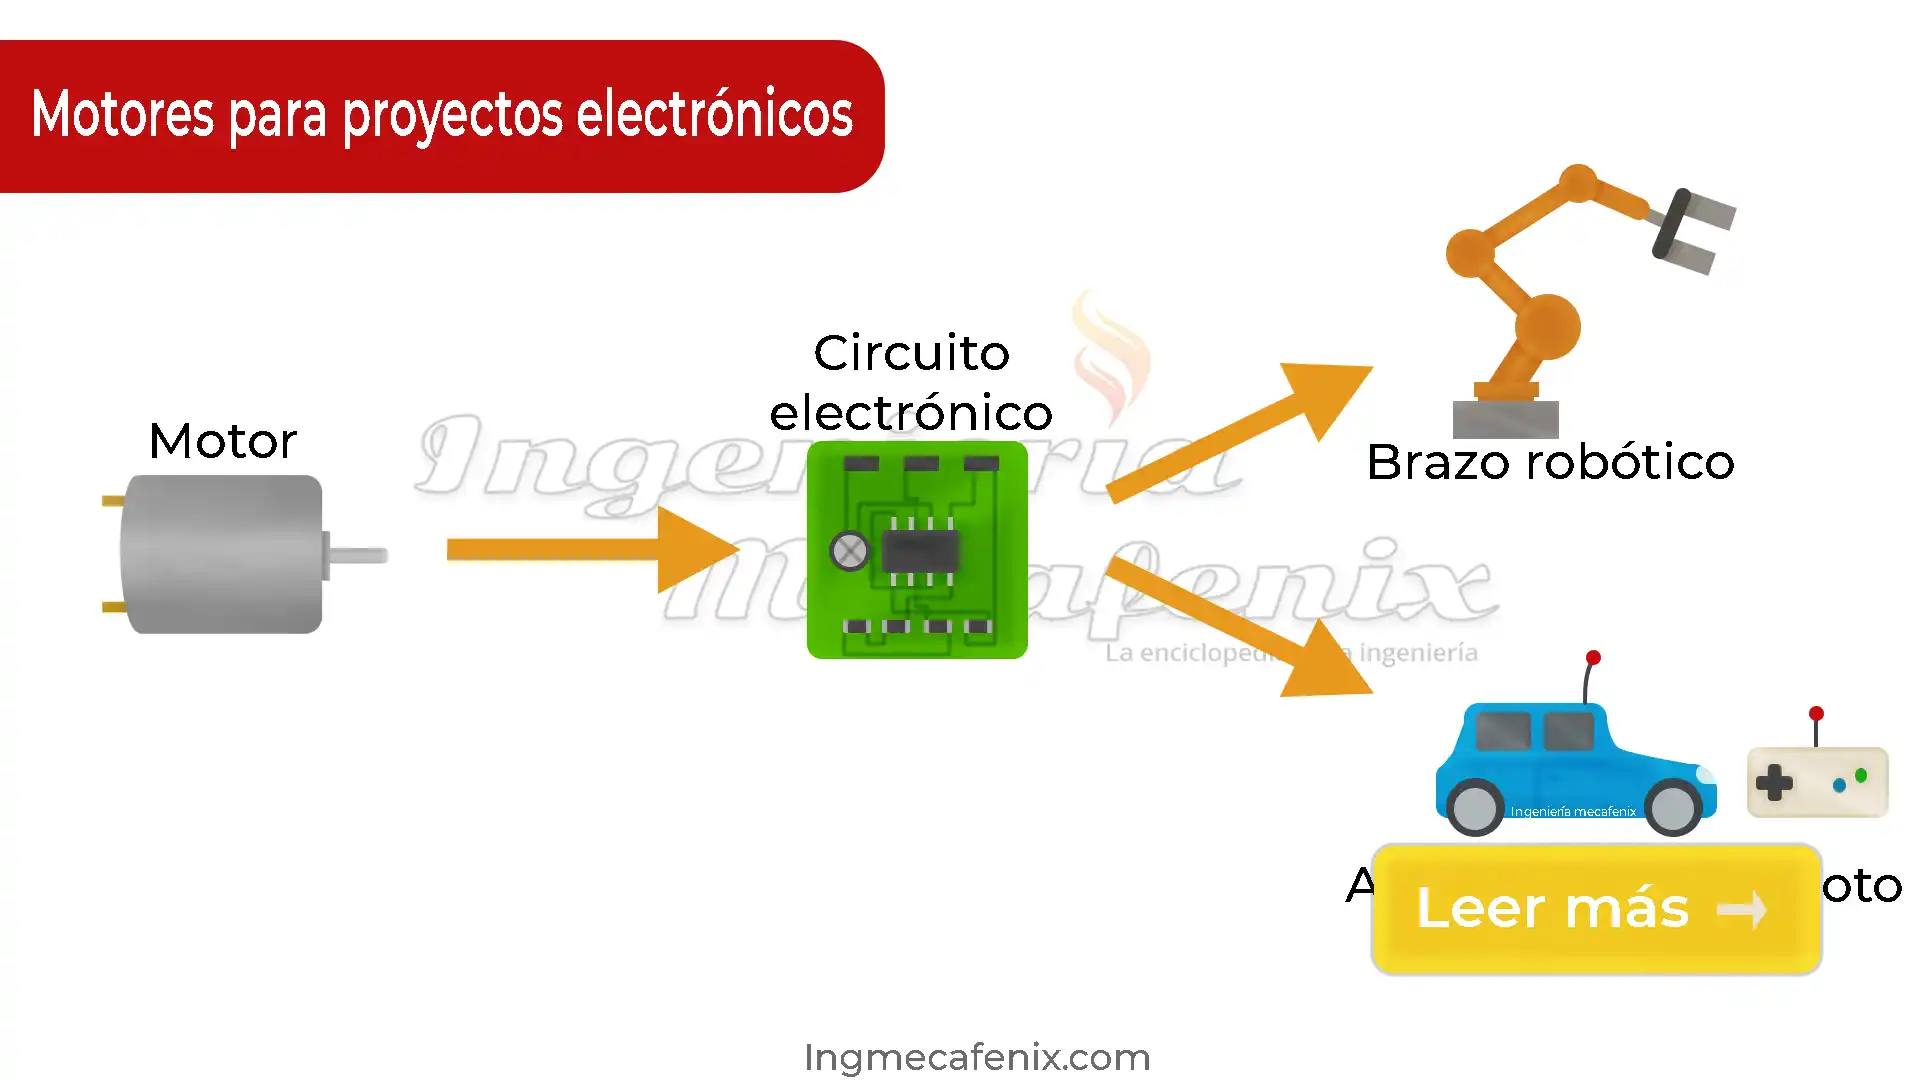 Que motores eléctricos se utilizan en los proyectos de electrónica